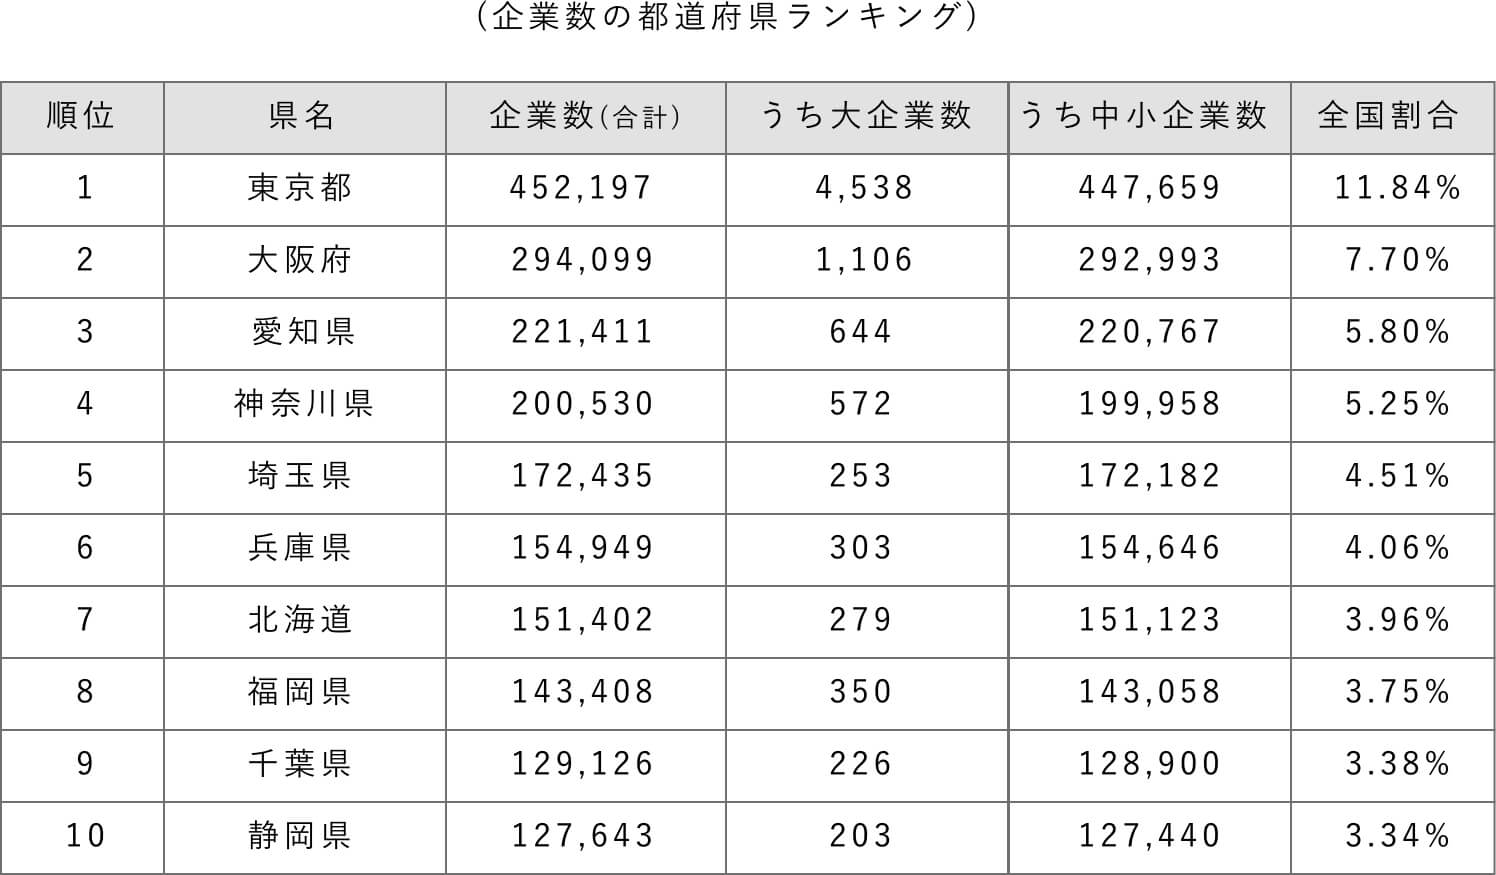 企業数の都道府県ランキング表